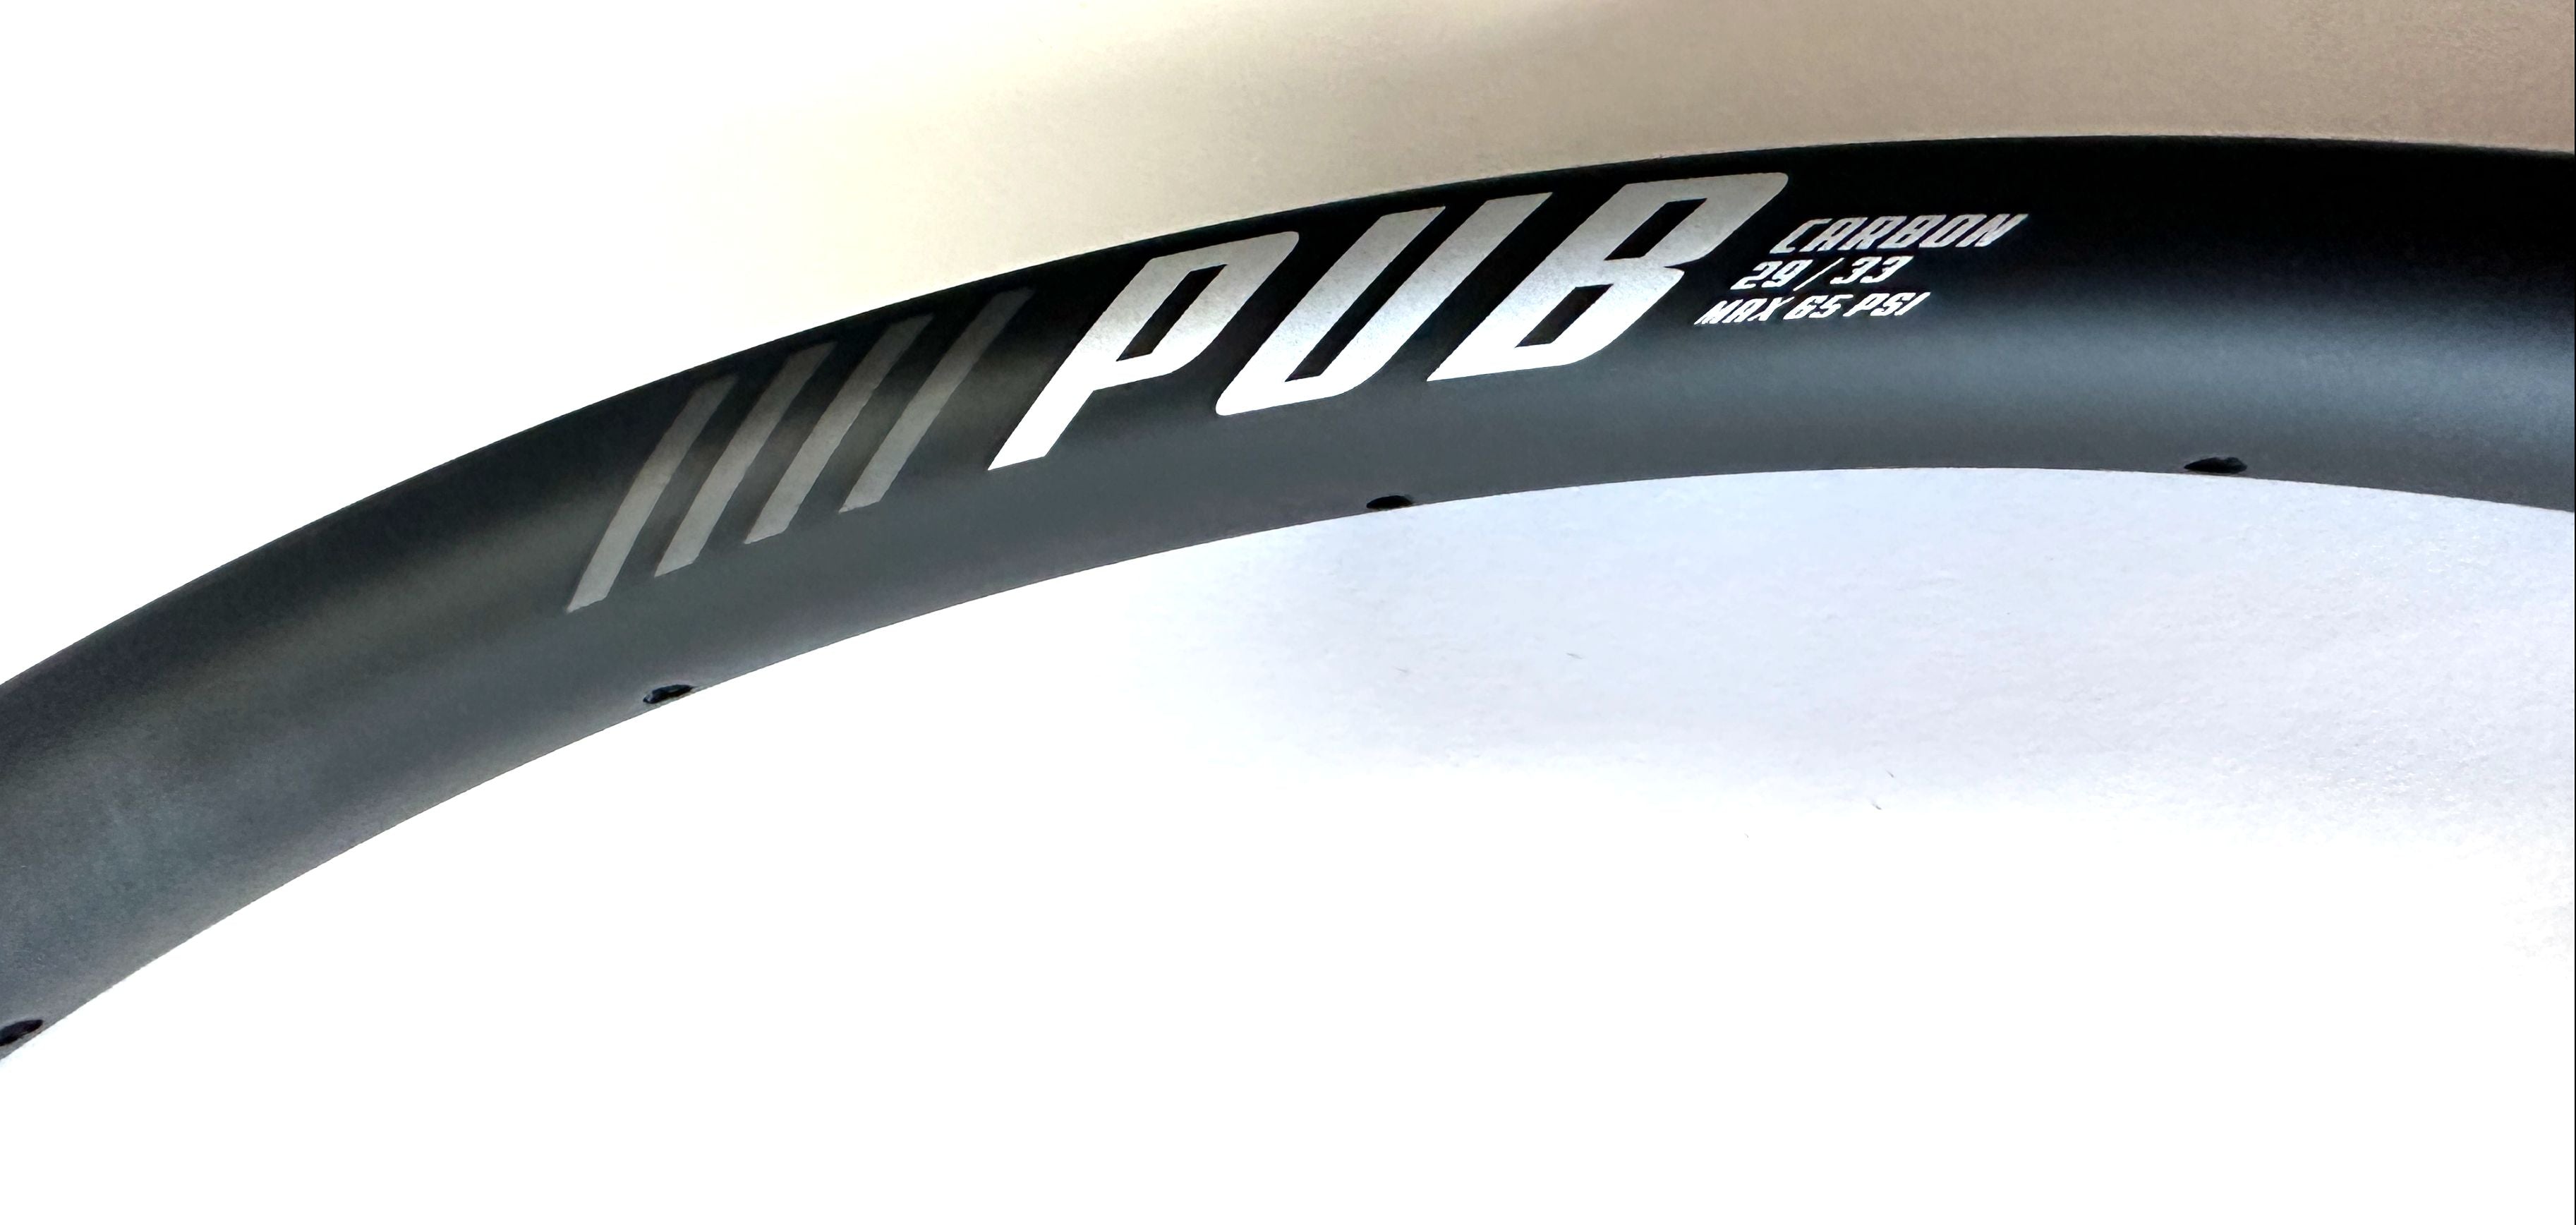 PUB 29er 29" Carbon XC Clincher Bike MAX 65 PSI Wheel Rim 28 Spoke NEW